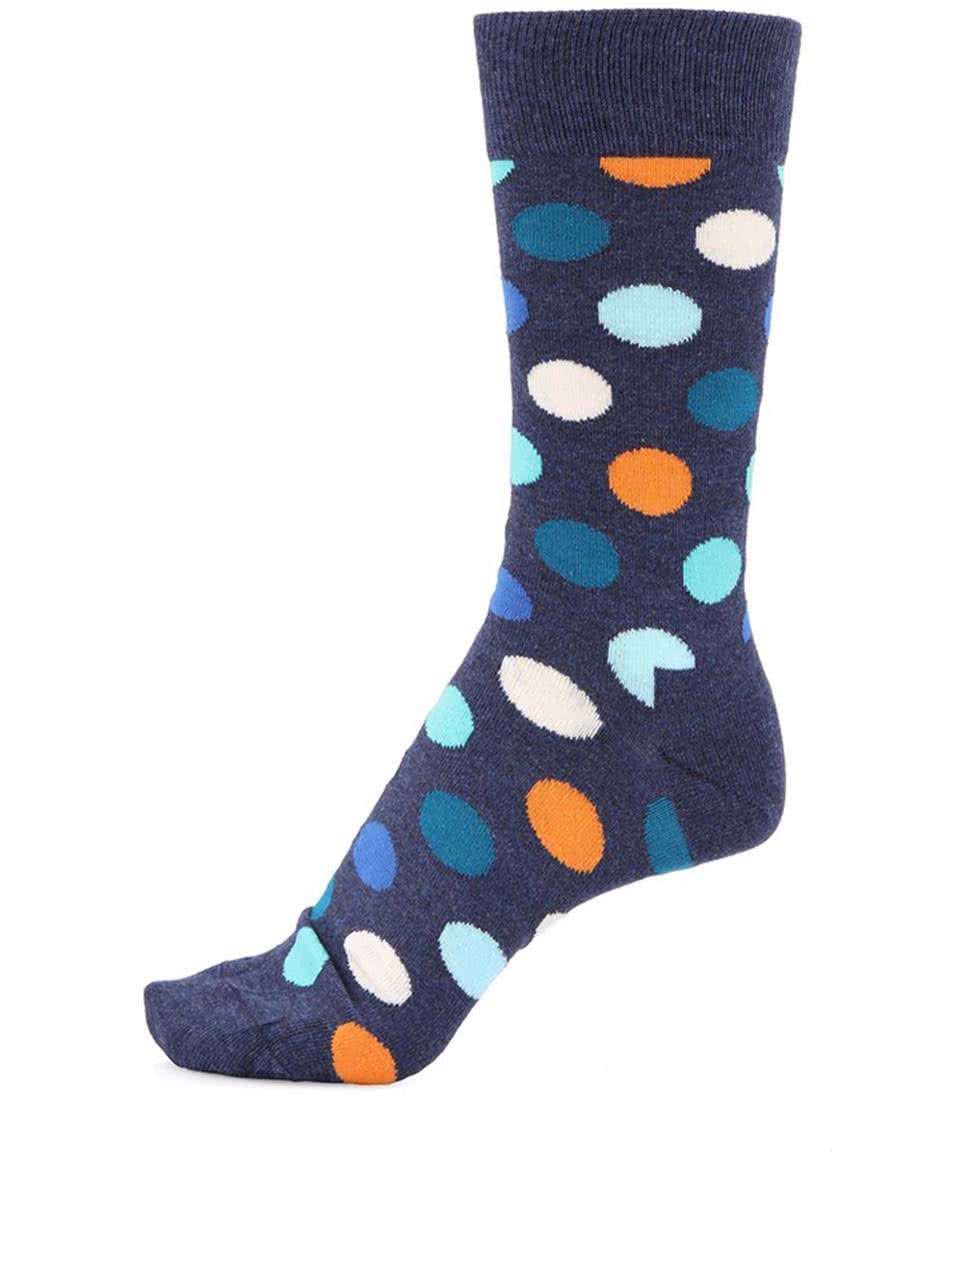 Modré unisex ponožky s barevnými puntíky Happy Socks Big Dots